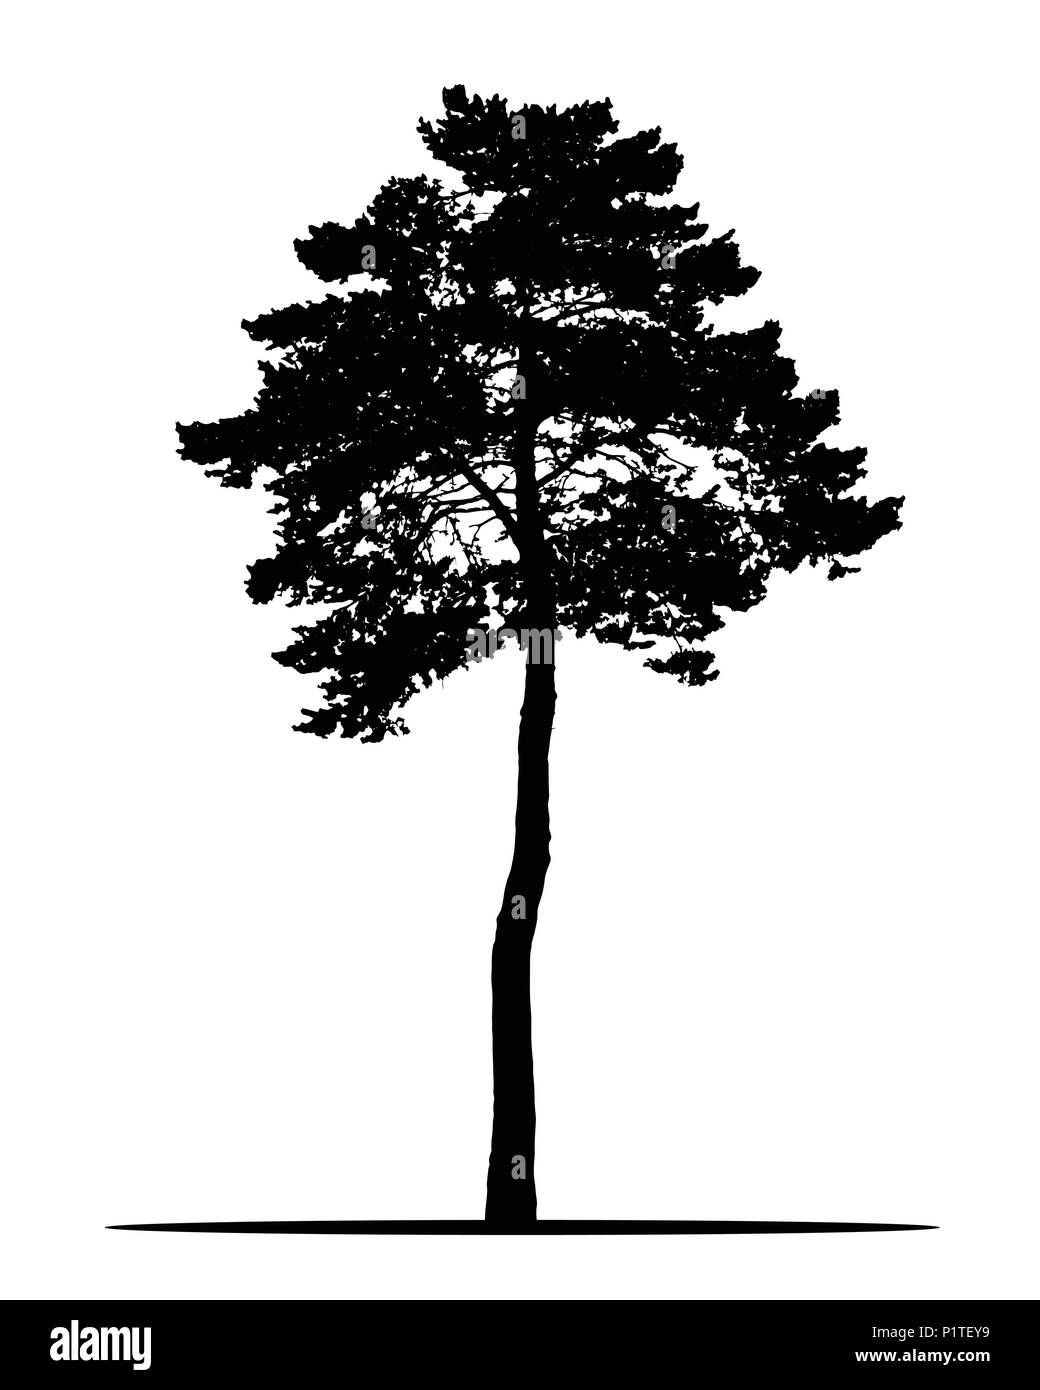 Realistische Silhouette der Nadelhölzer Baum, auf weißem Hintergrund-Vektor Stock Vektor